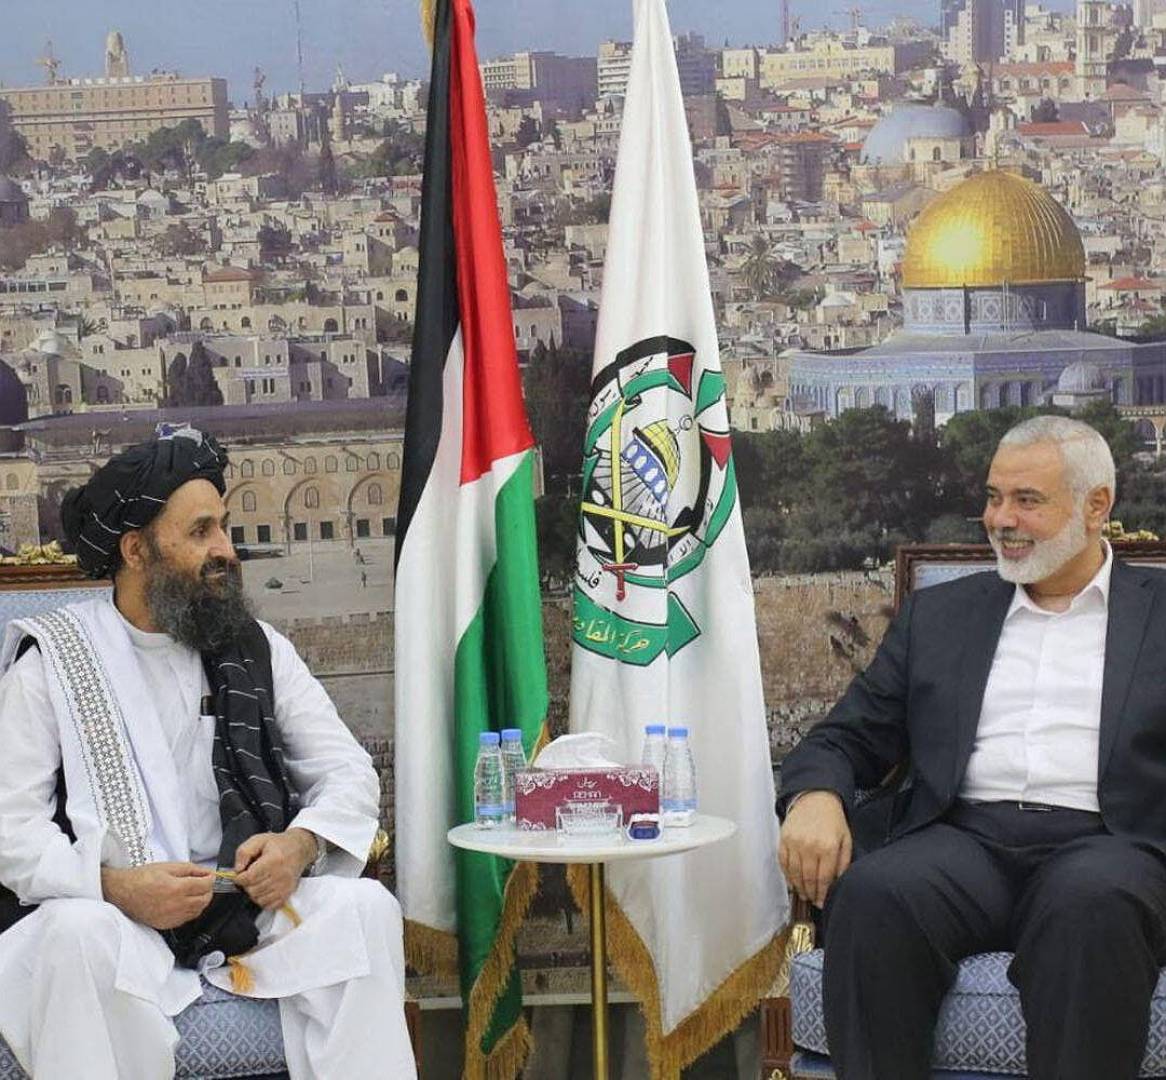 طالبان تلتقي بوفد من حماس برئاسة هنية وتؤكد تأييدها للمطالب الفلسطينية